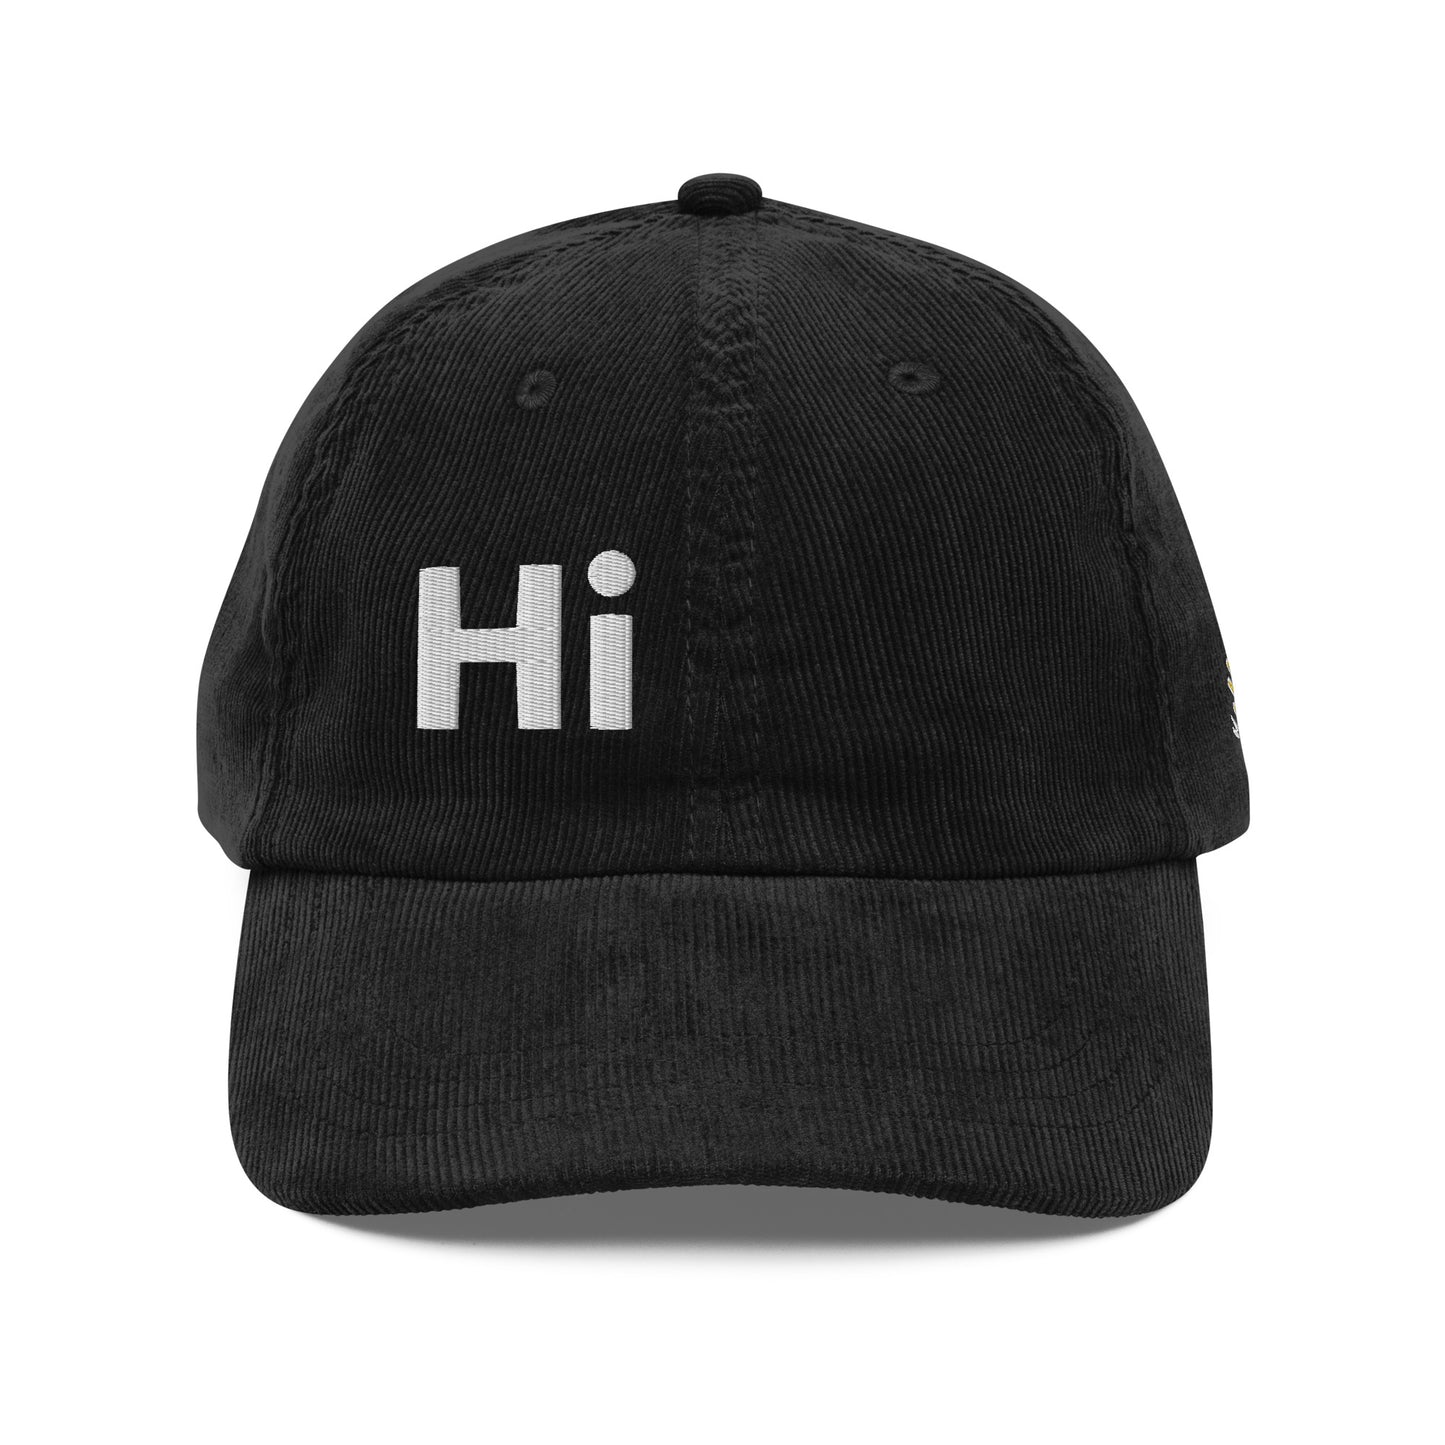 Hi Heyyyyy Corduroy Hat